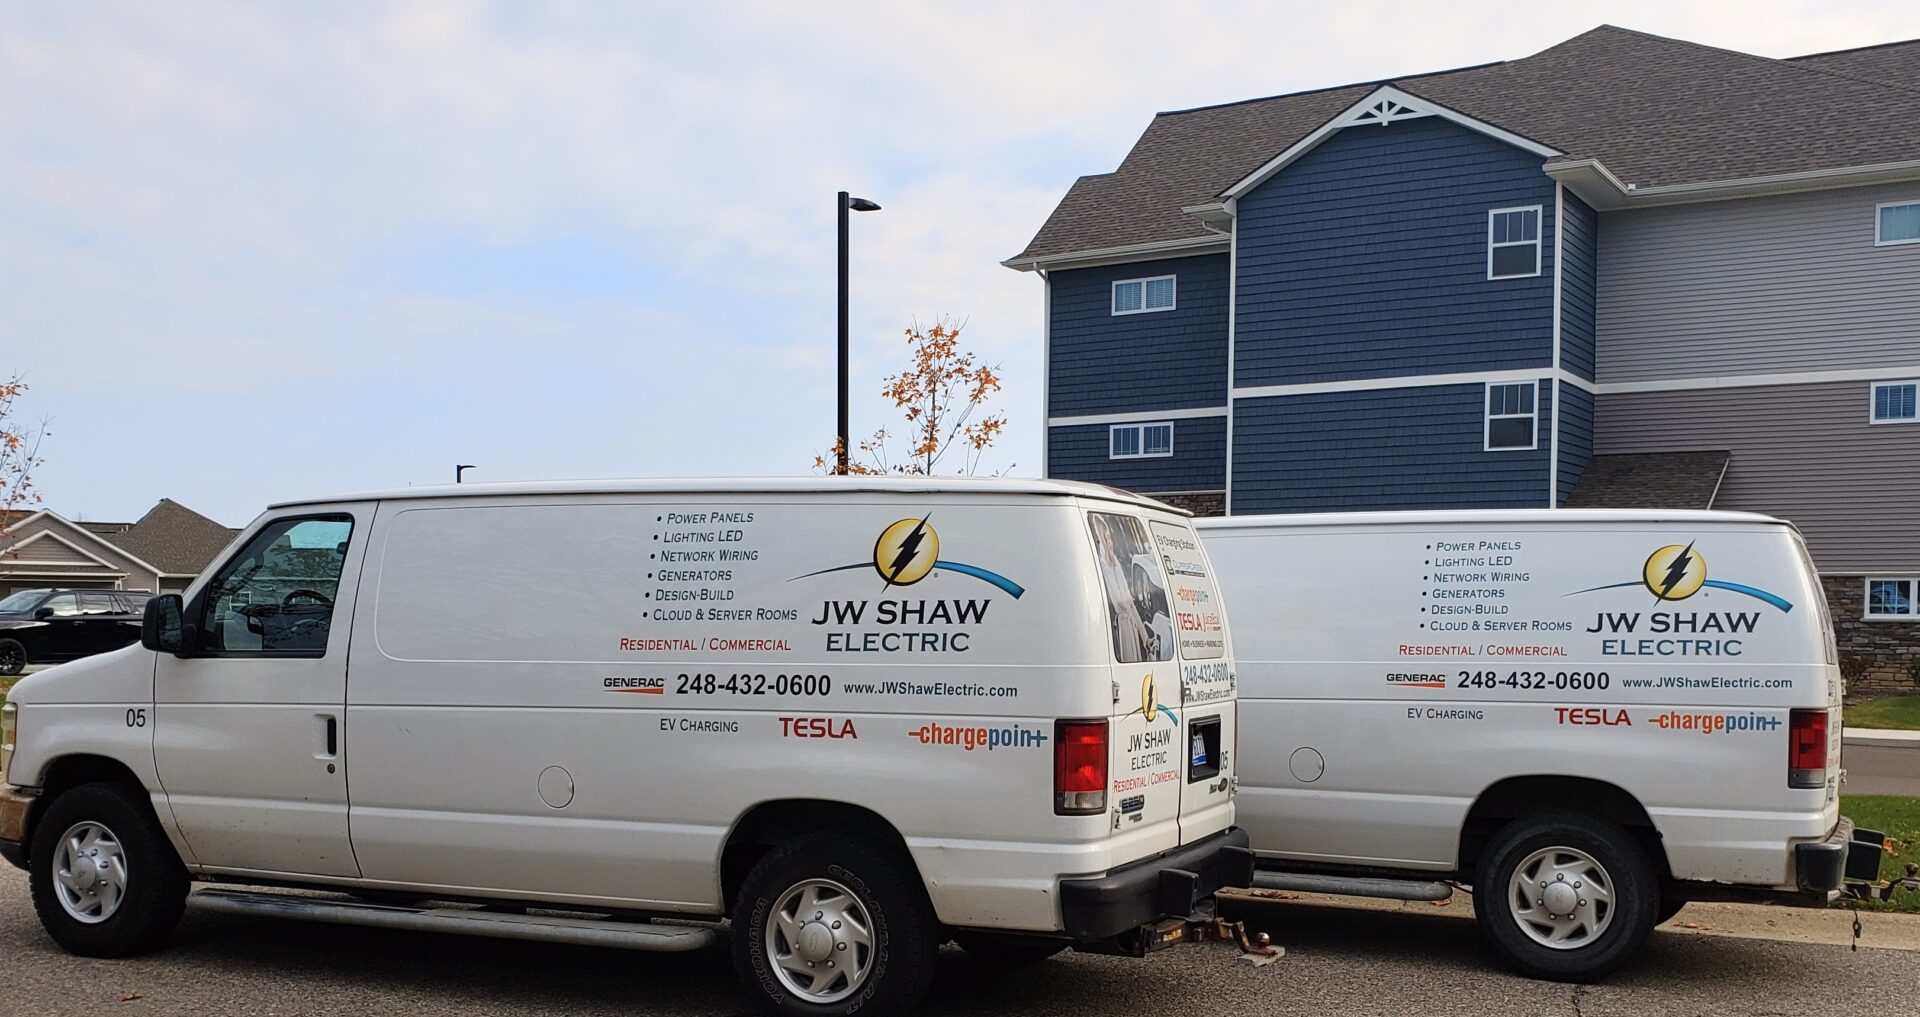 JW Shaw Electric